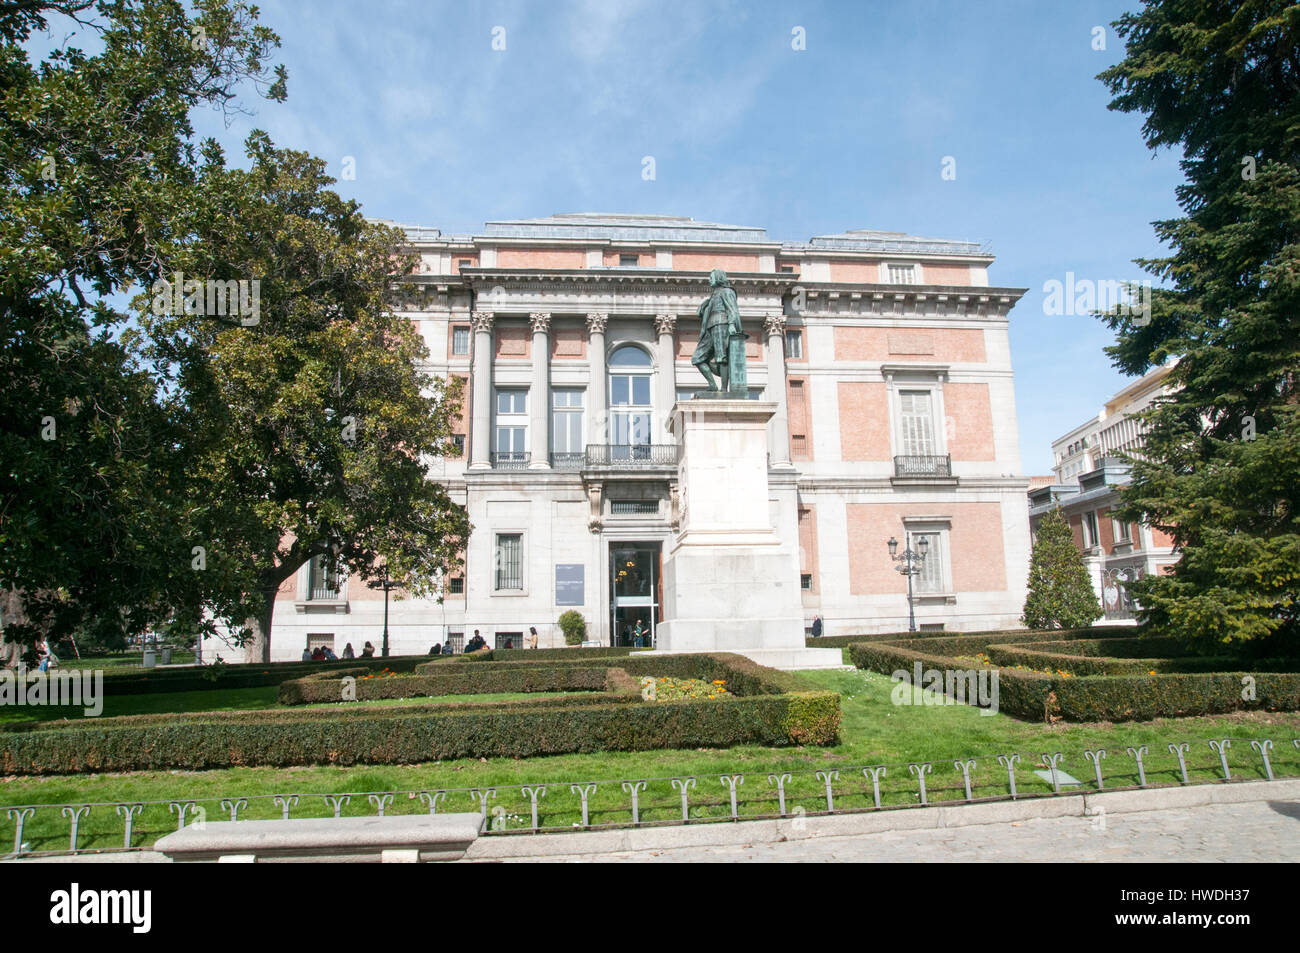 The Prado Museum, Madrid, Spain Stock Photo